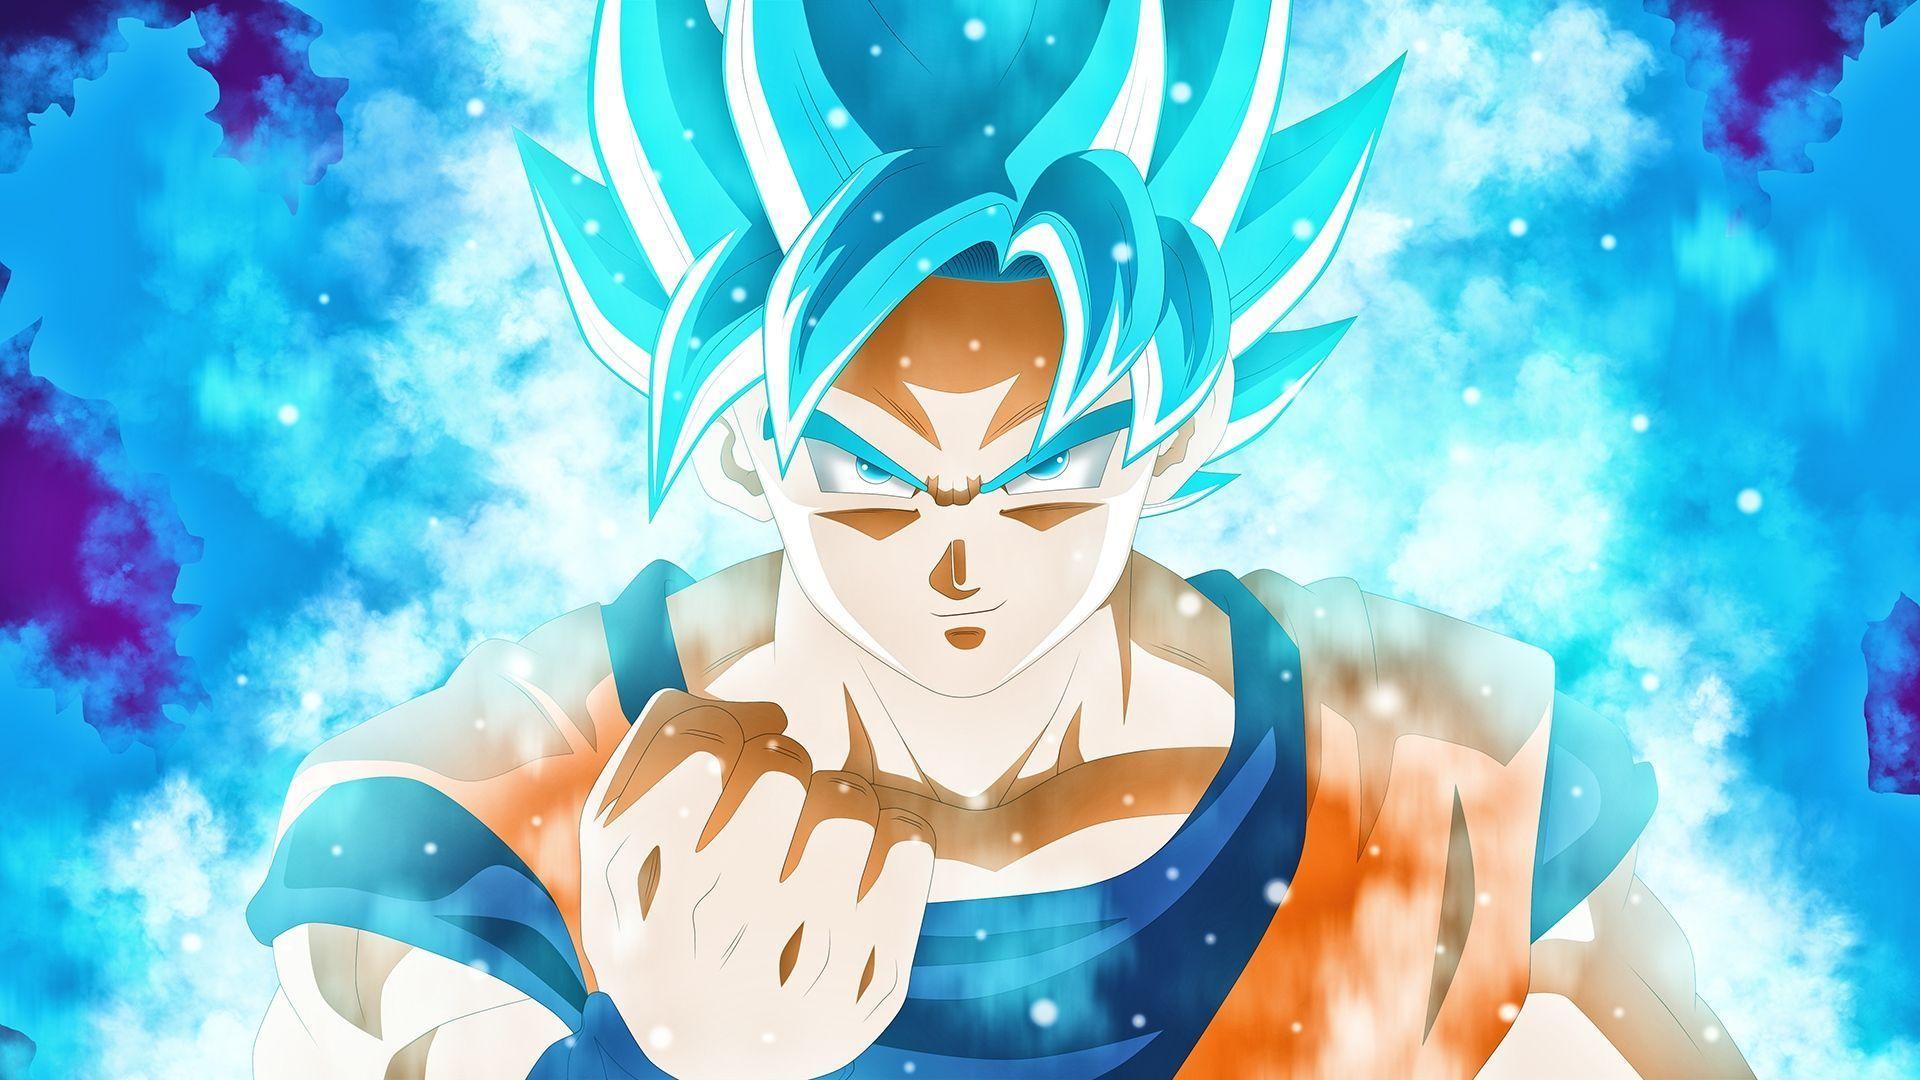 Blue Super Saiyan Goku Wallpaper Free Blue Super Saiyan